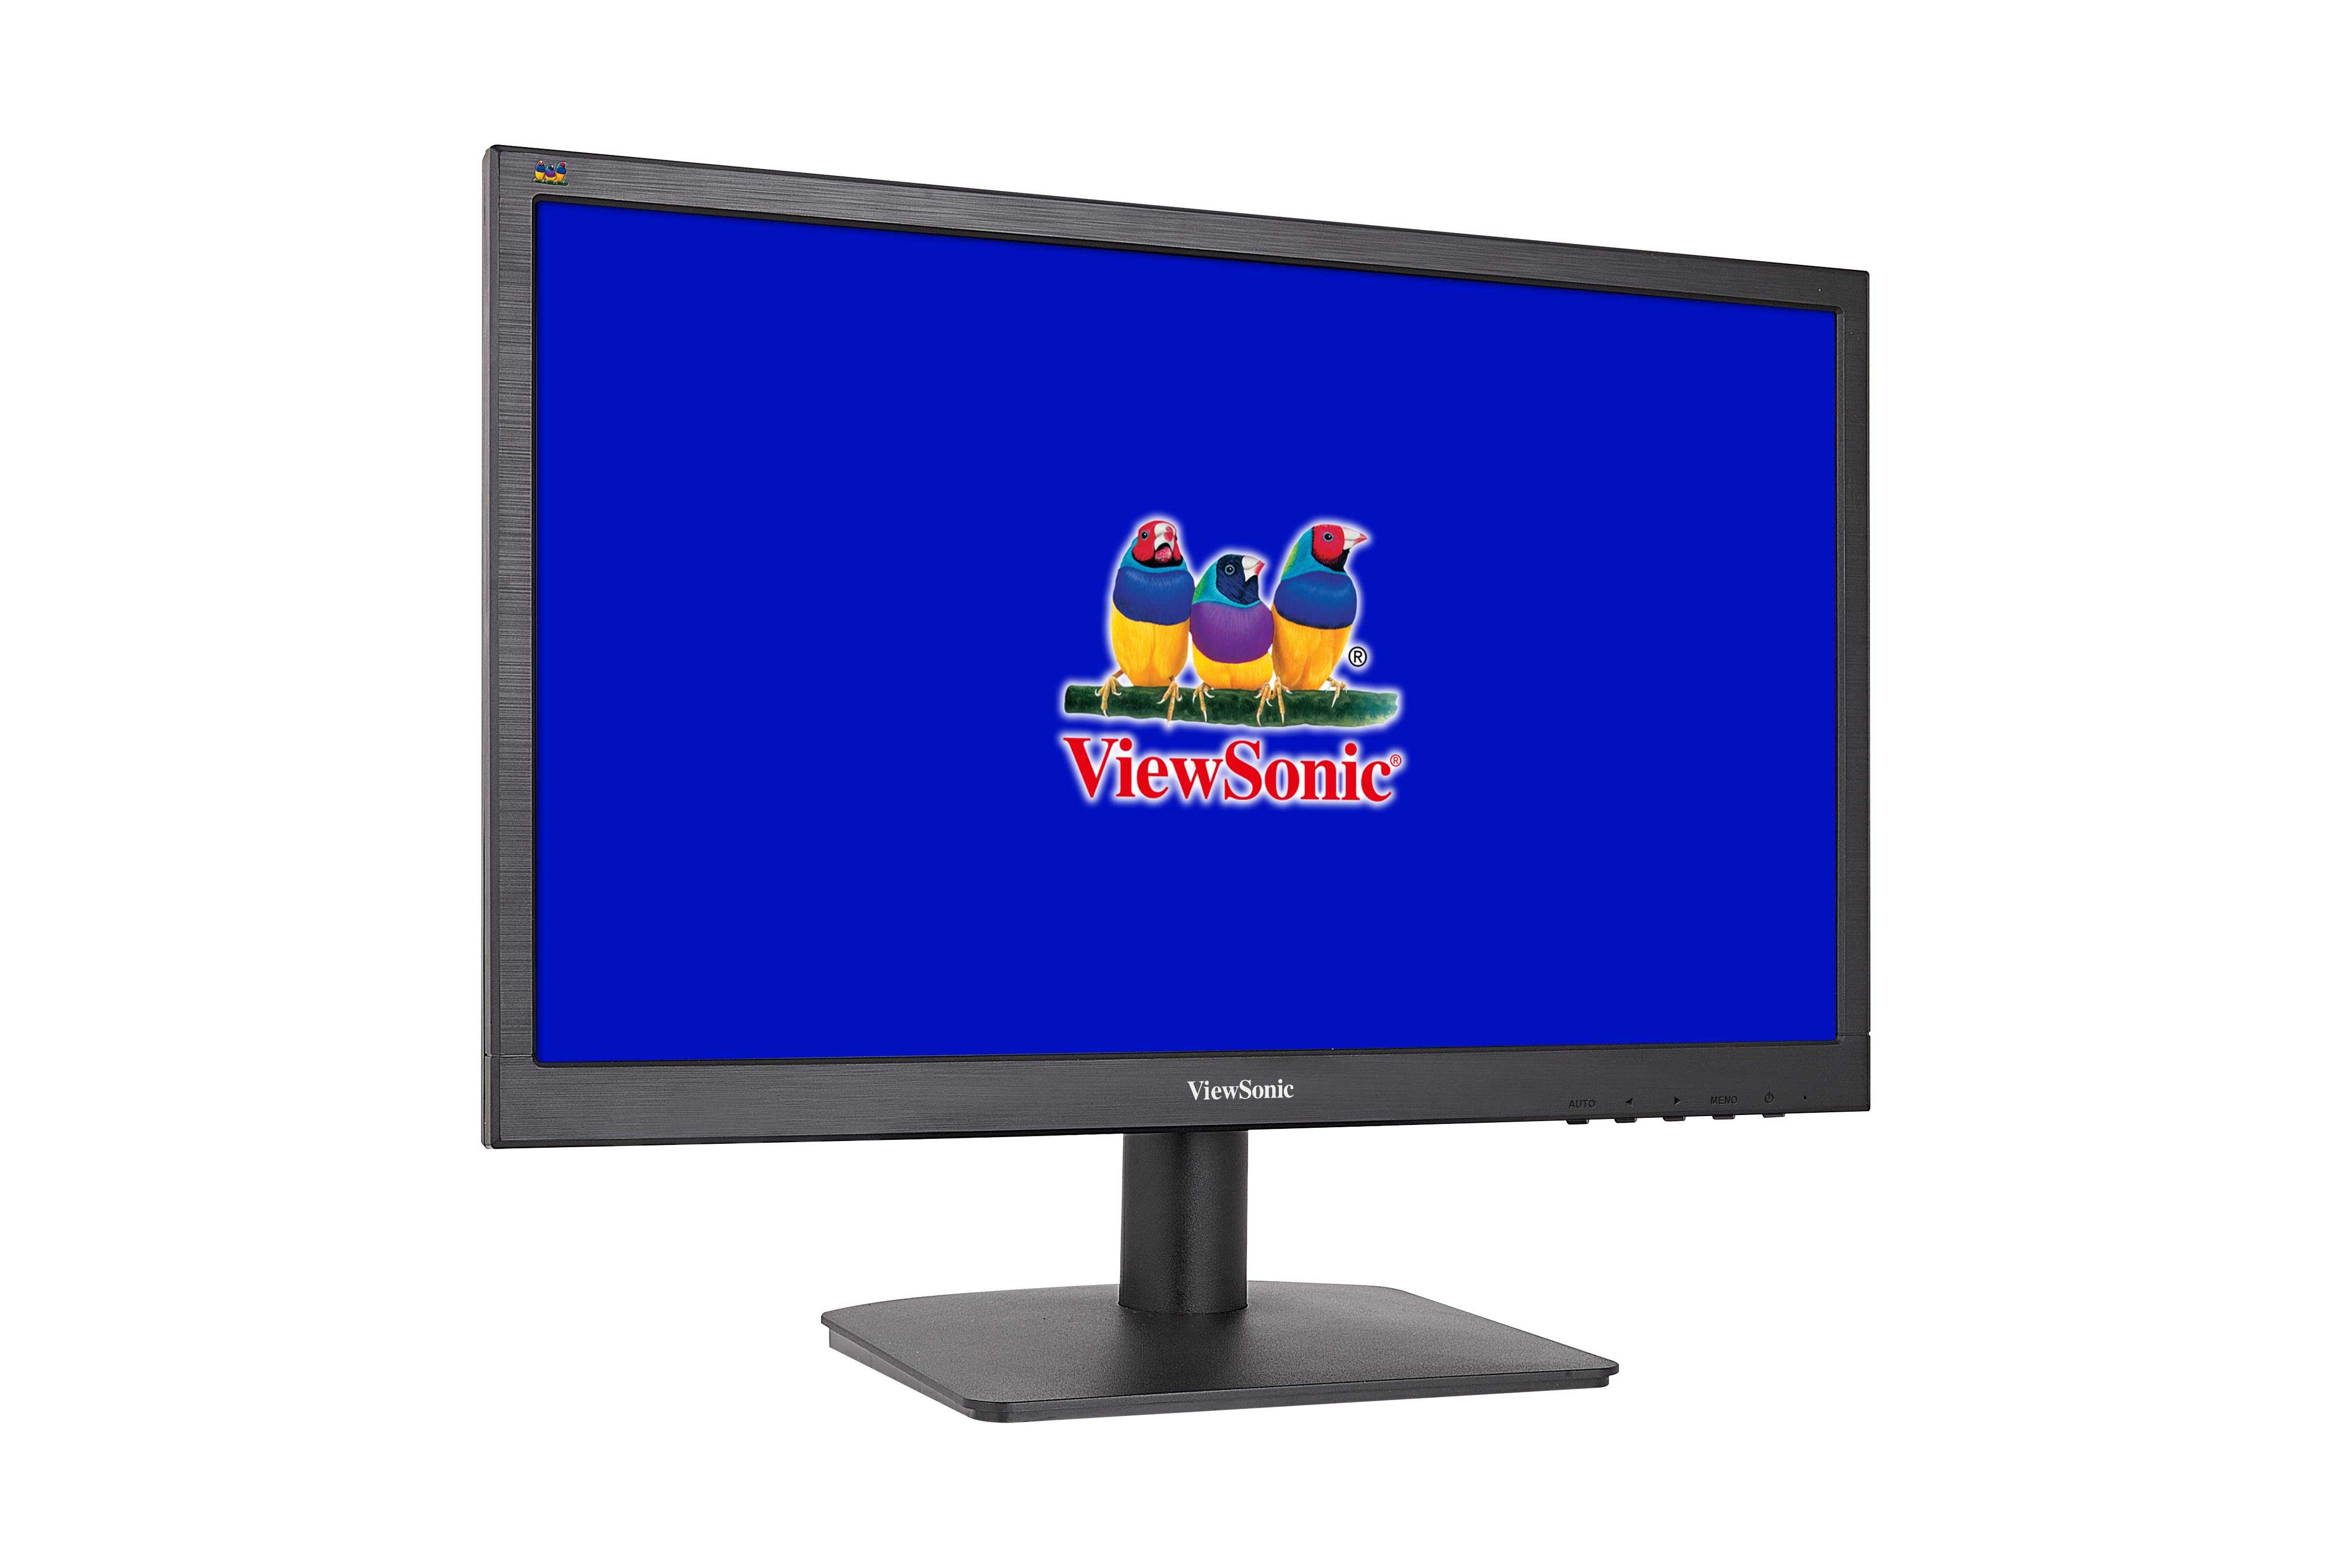 Жк монитор 23" viewsonic va2349s — купить, цена и характеристики, отзывы